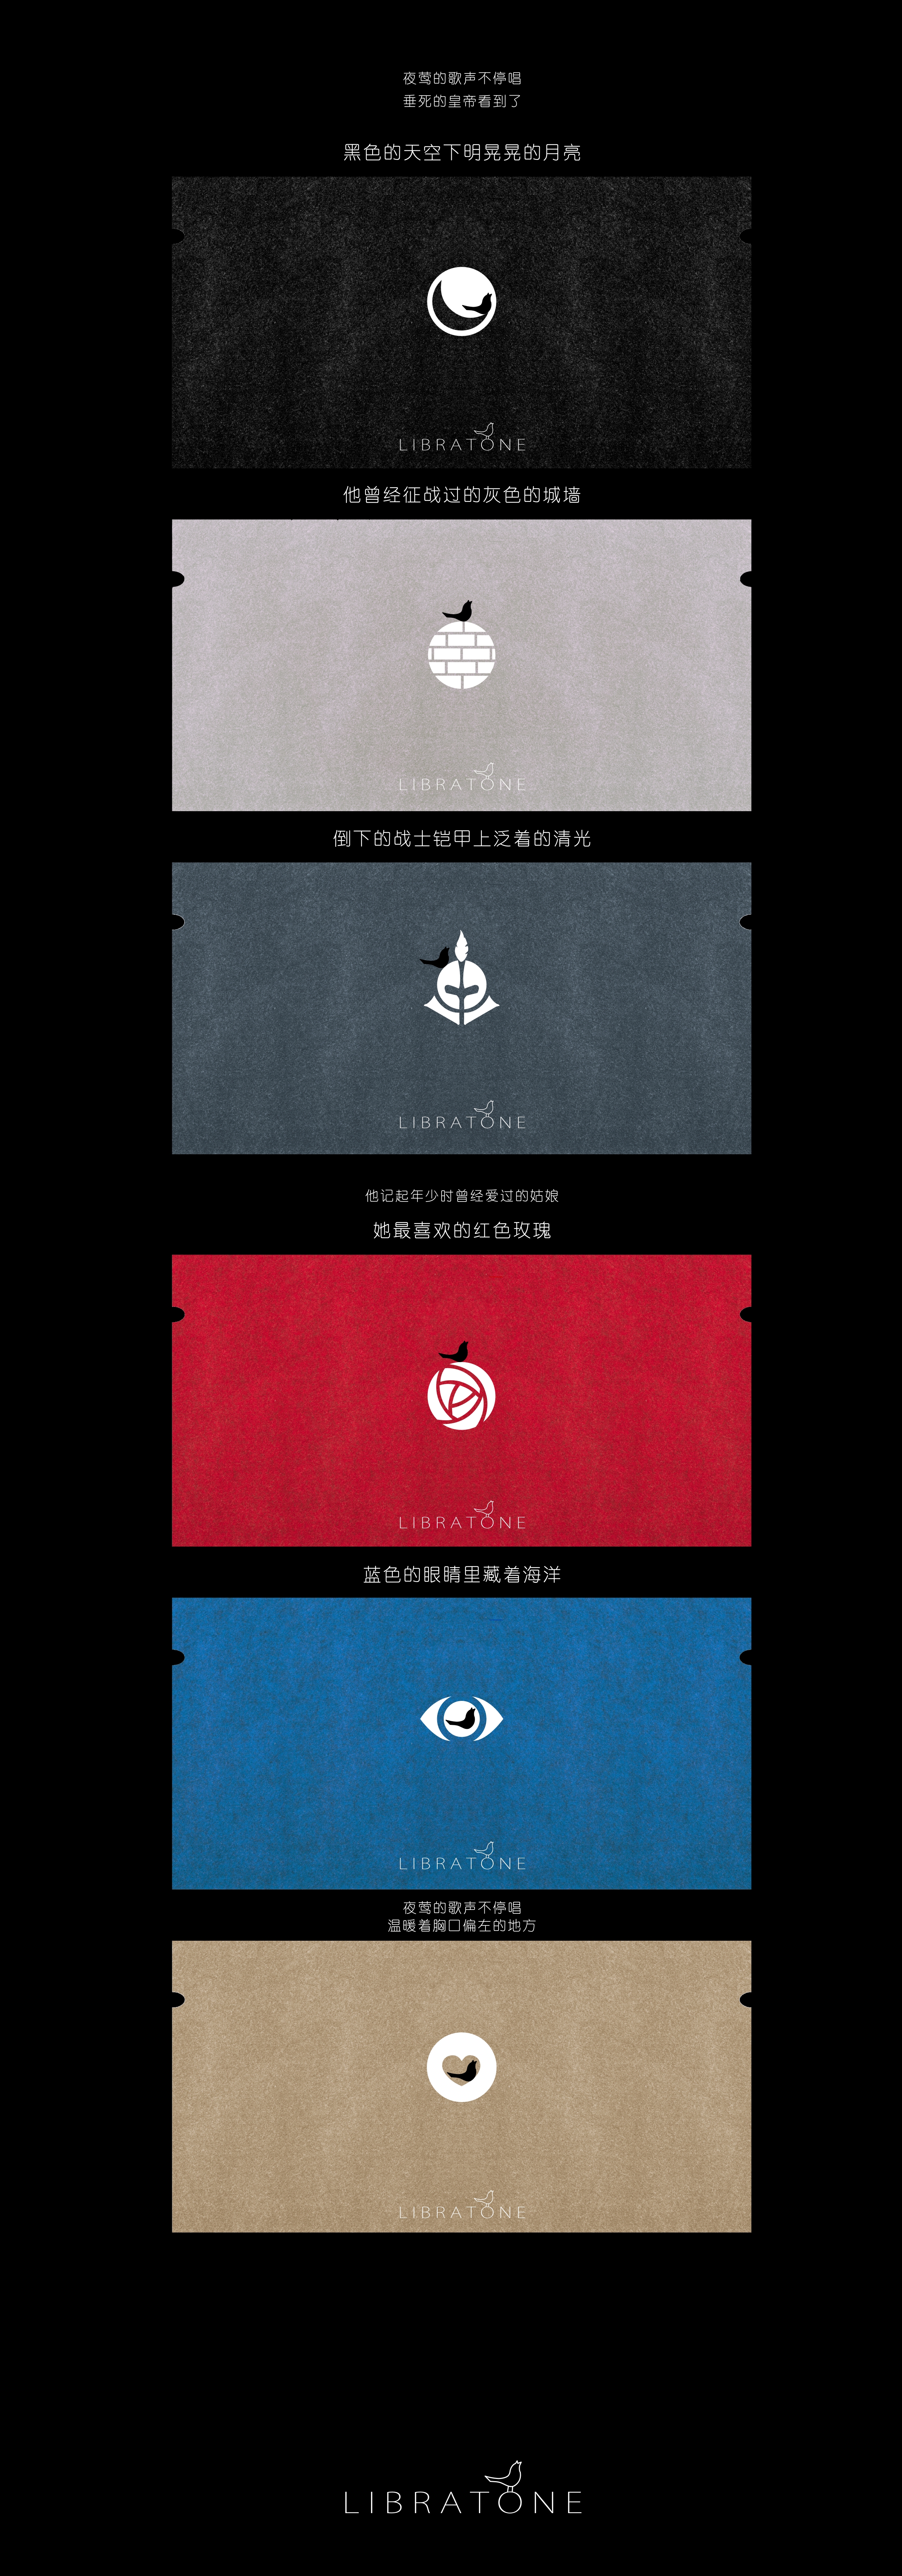 分享冒险岛2服装设计中国杯logo书法字体设计